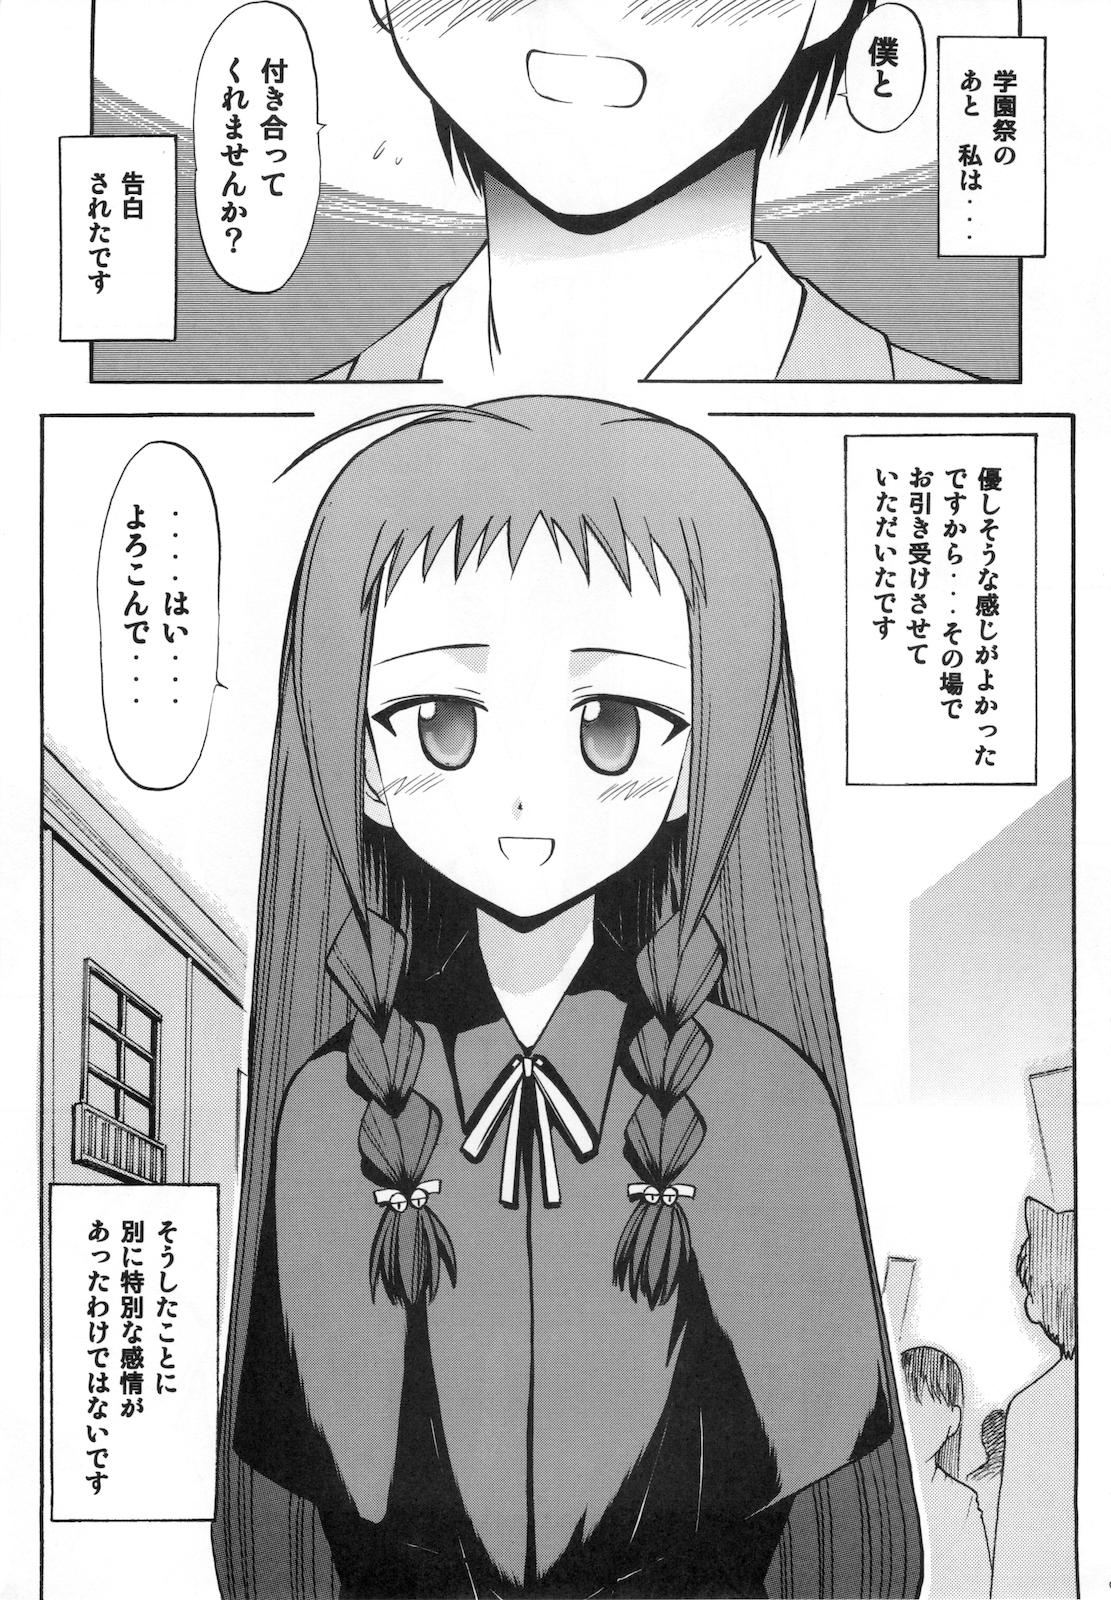 Foursome Yue no Koisuru Heart - Mahou sensei negima Novinho - Page 5